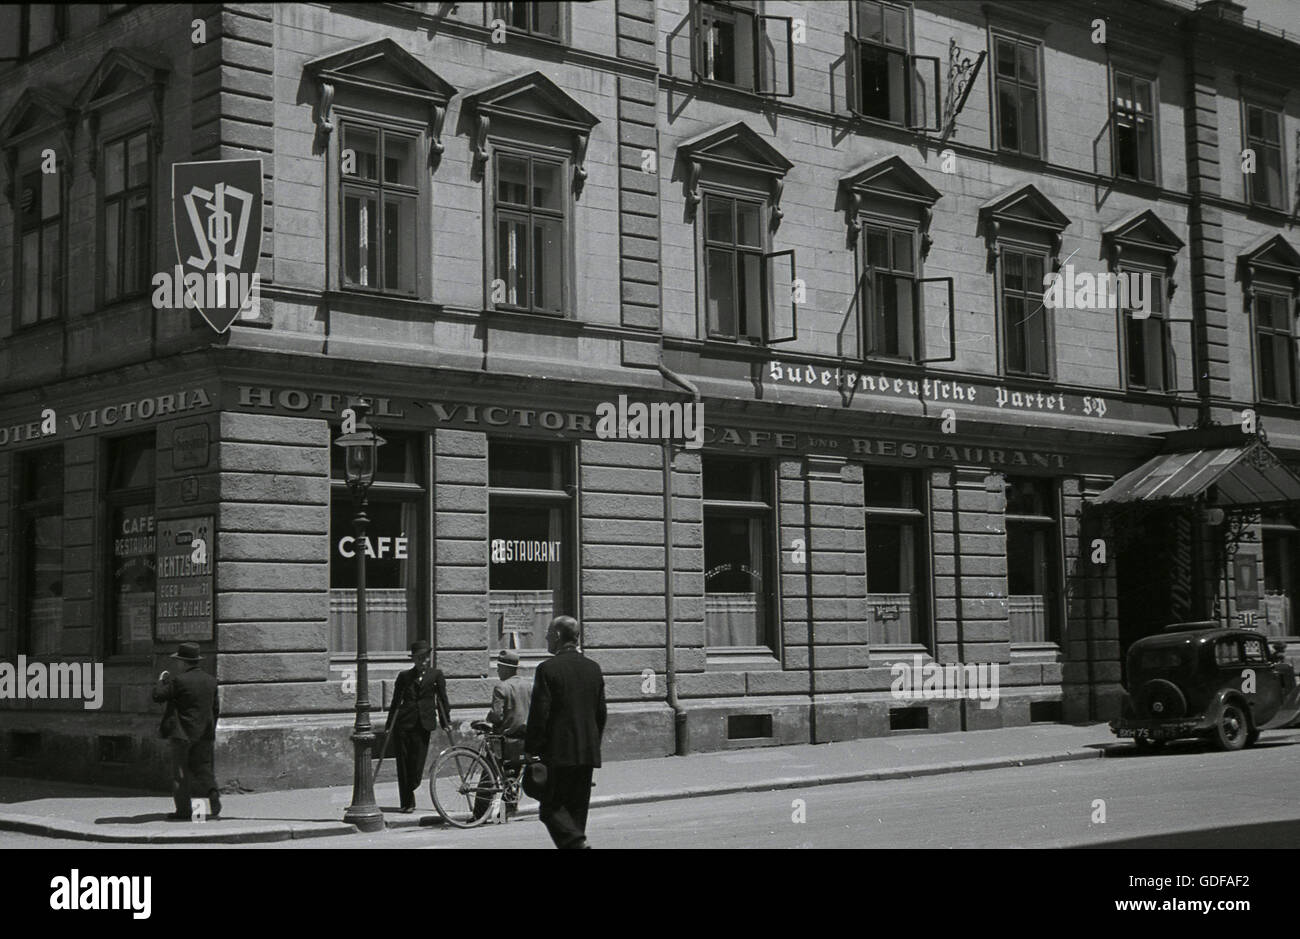 1930er Jahre, das Hauptquartier der Sudeten Deutsch Partei (SdP) über das Hotel Victoria in Cheb (Eger) Sudetenland, historische interwar Tschechoslowakei. Ein Auto mit einem britischen Nummernschild ist außerhalb geparkt. Stockfoto